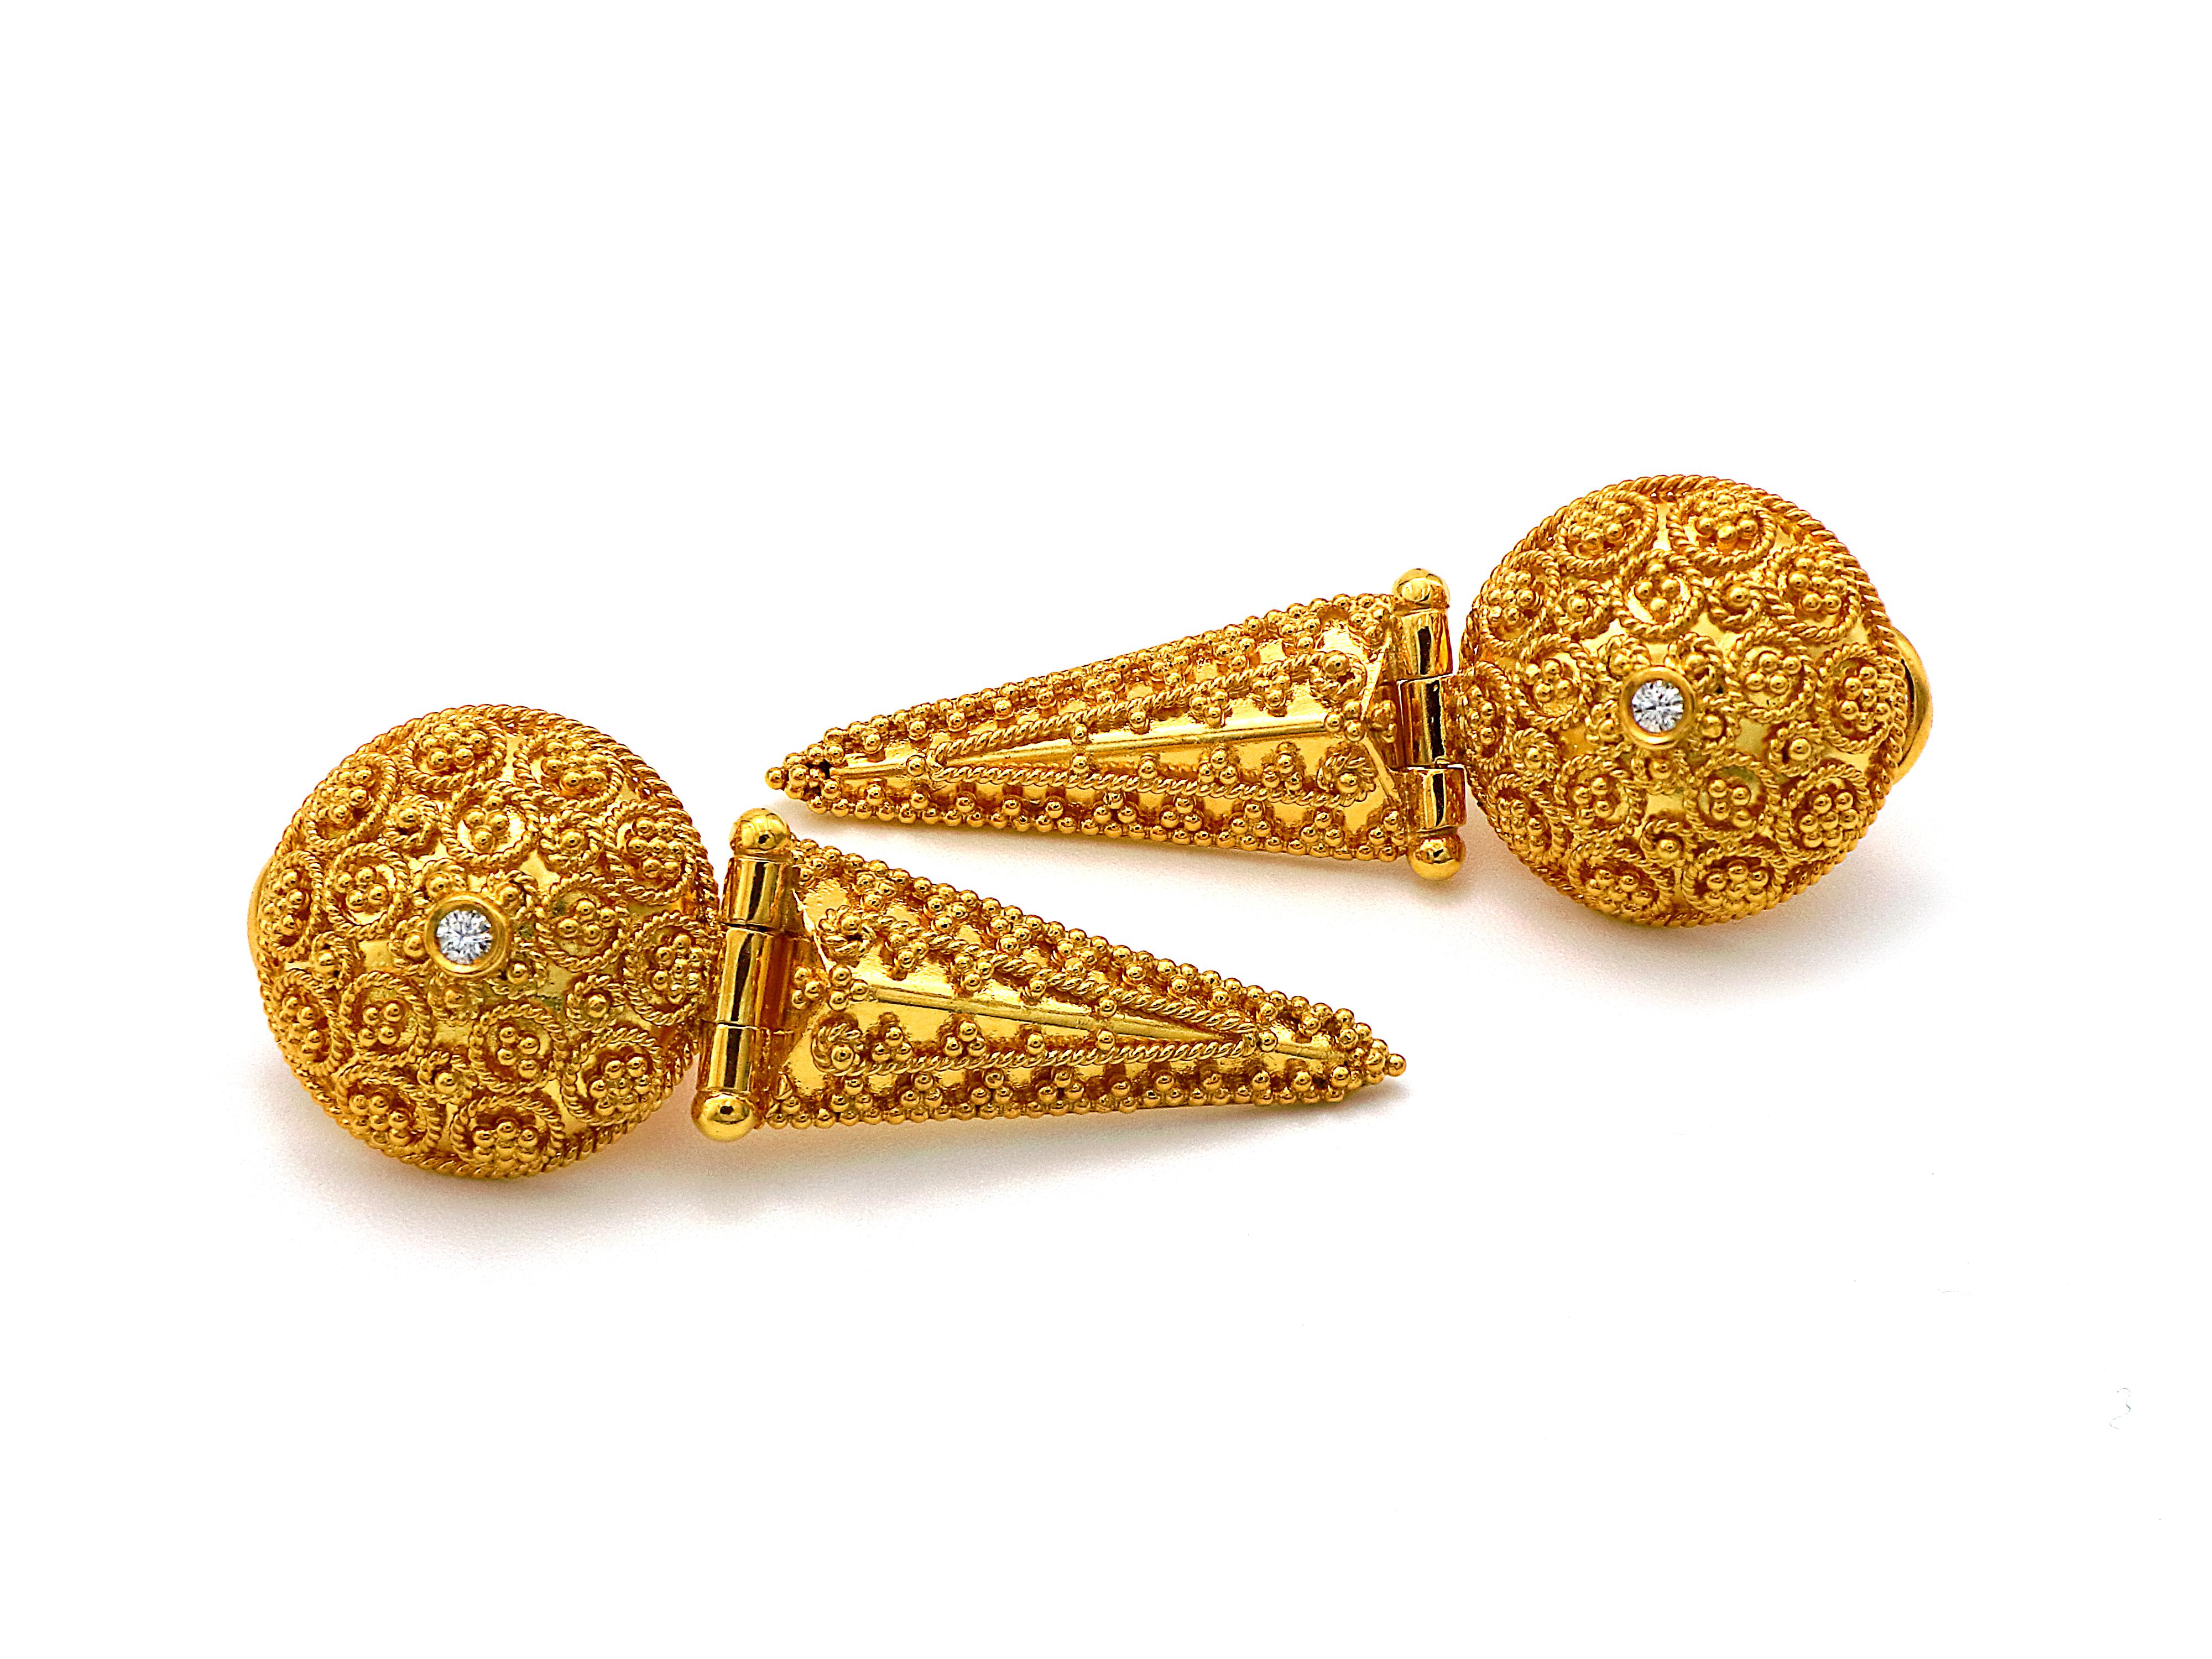 Boucles d'oreilles néoclassiques en or 18 carats avec un demi-cercle profondément décoré de filigranes et de granulations se terminant par une partie triangulaire pendante qui lui donne une essence plus longue avec un mouvement doux. Les deux